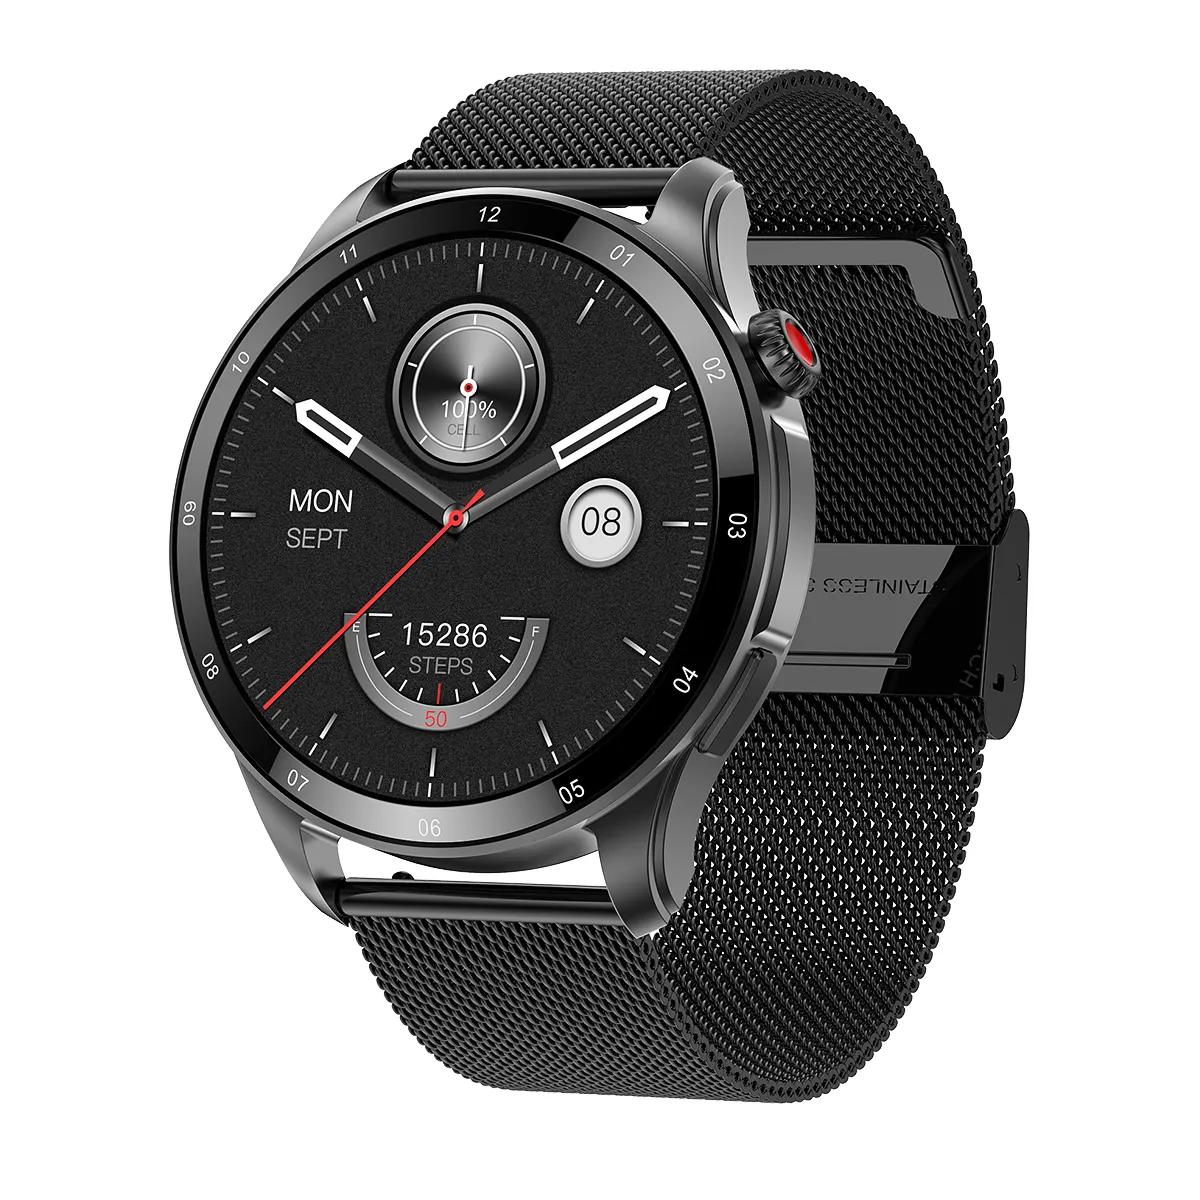 Vendita di orologi E26 da uomo Smartwatch salute 1.43 Full Touch Screen Smart Watch supporto attività Tracker E26 round smart watch